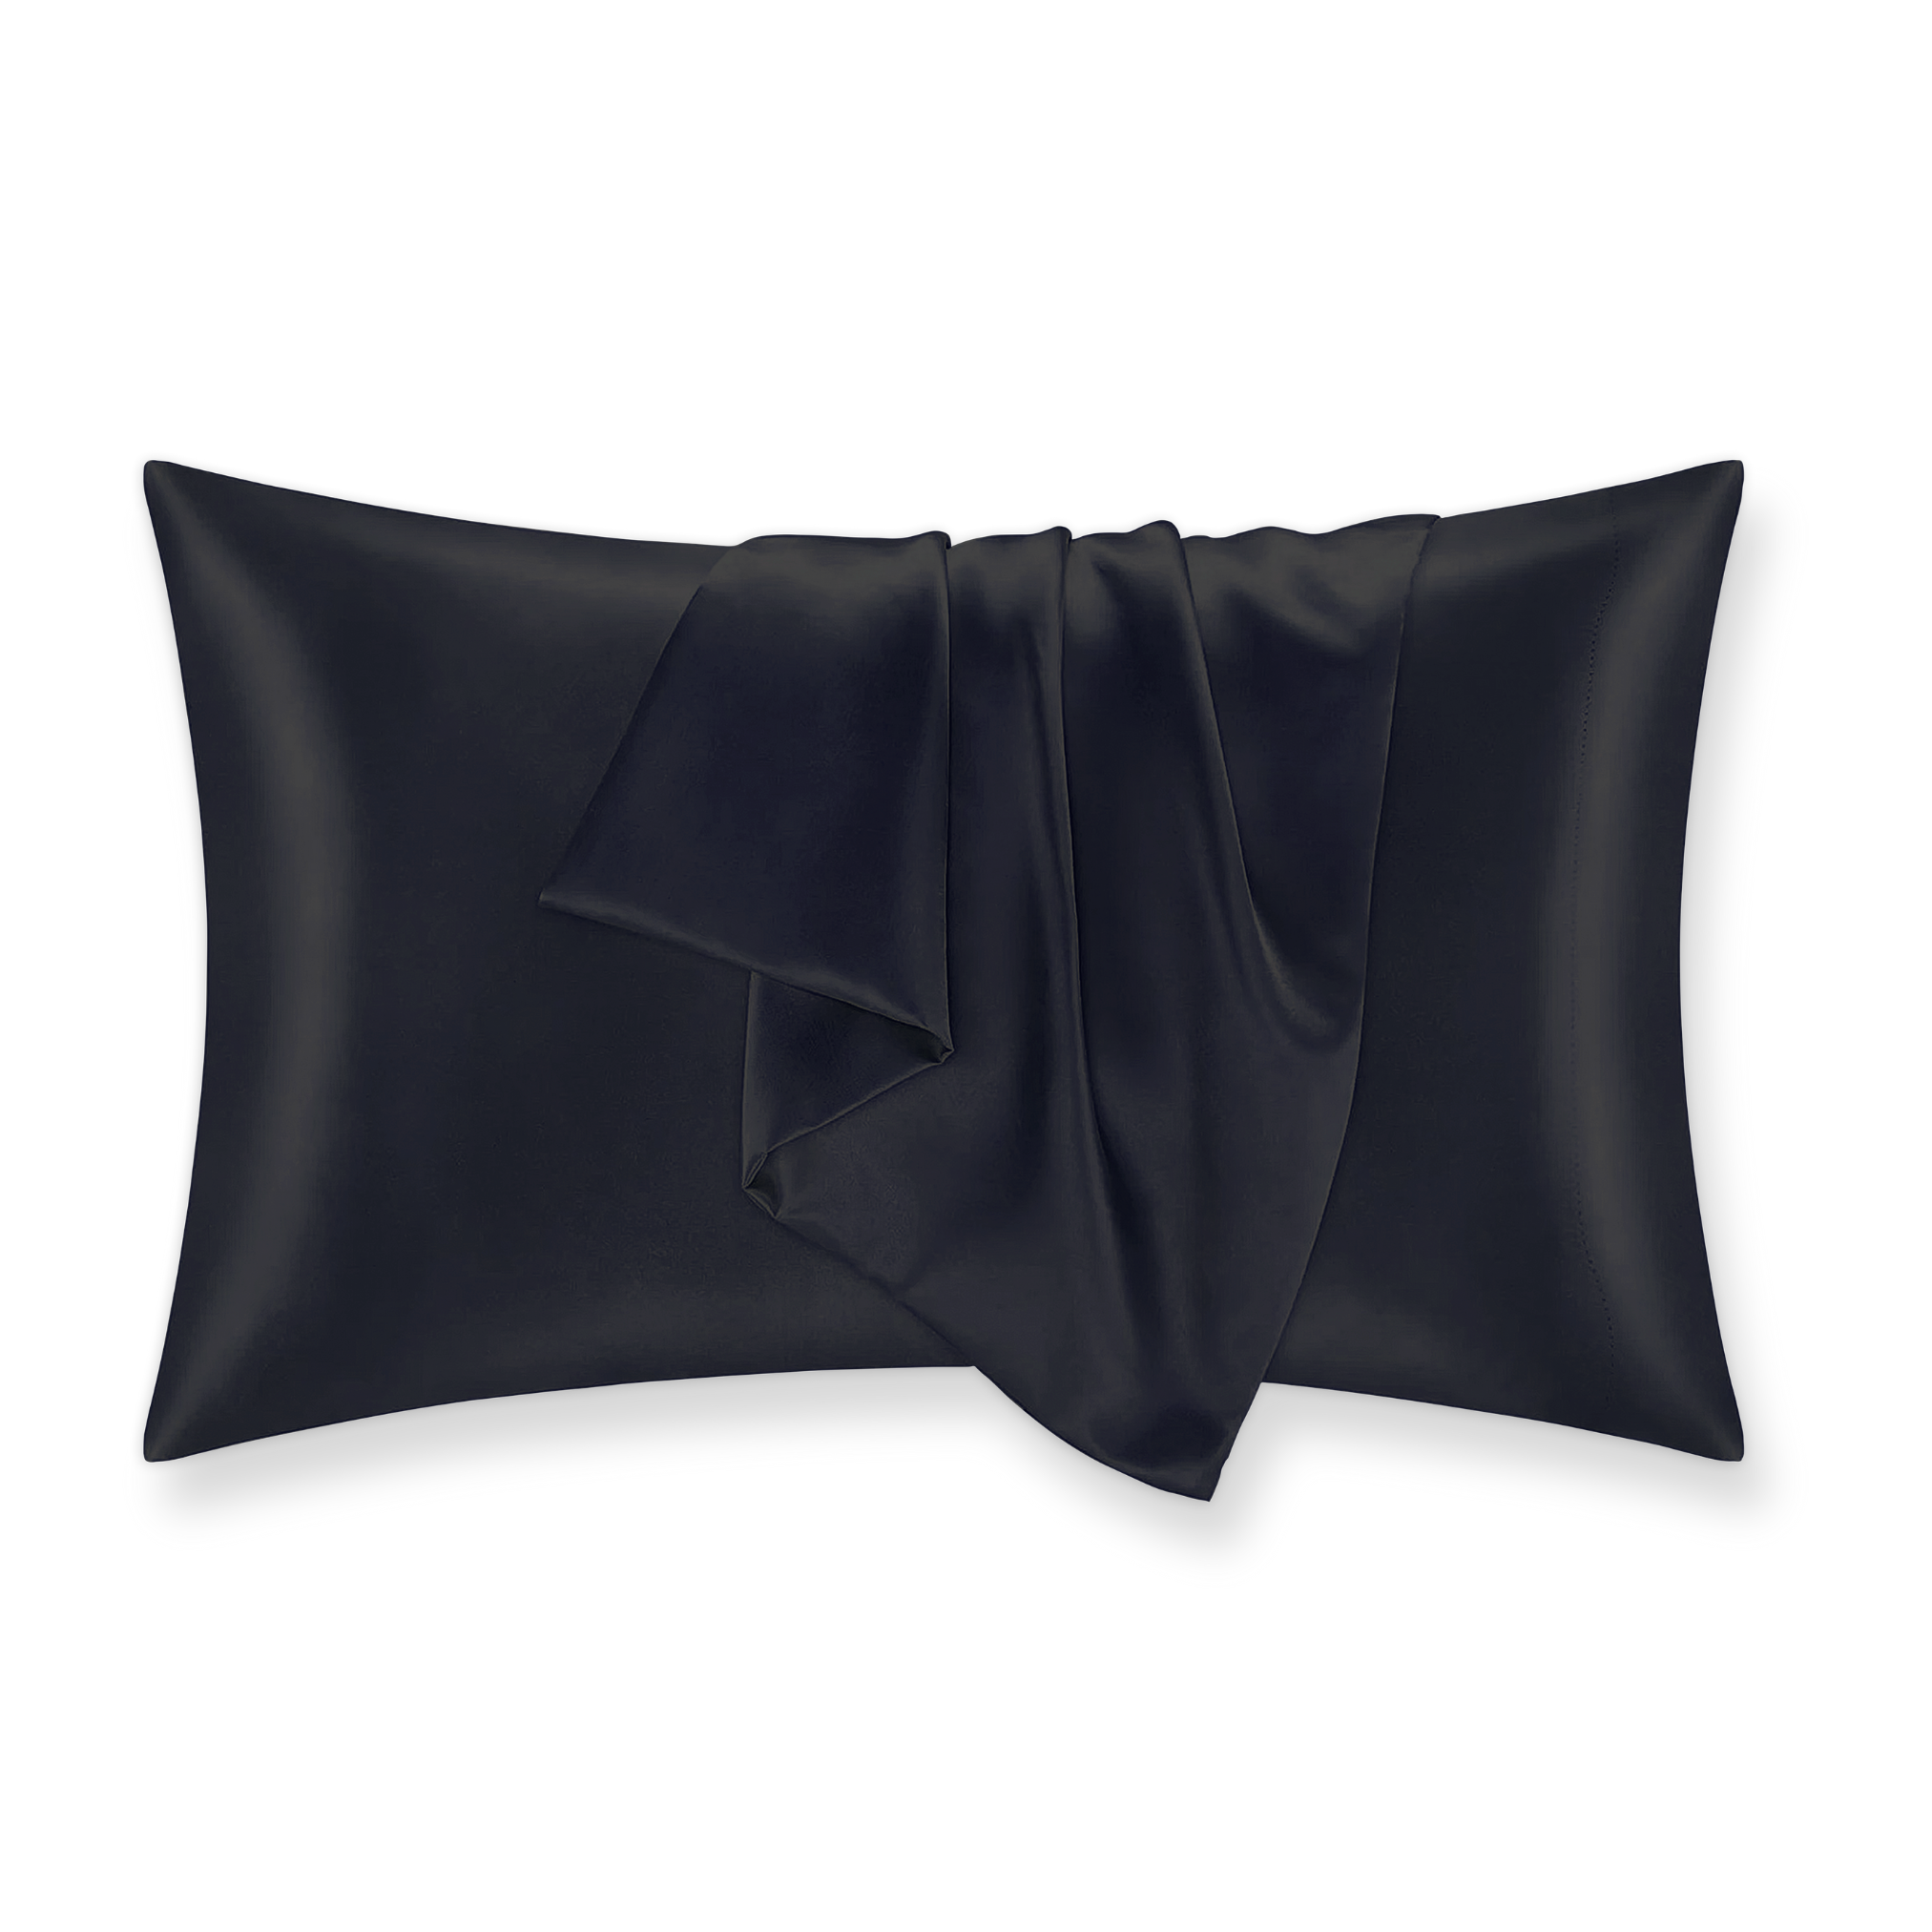 Gold Mulberry Silk Pillowcase - 100% Pure, Luxurious Sleep Comfort